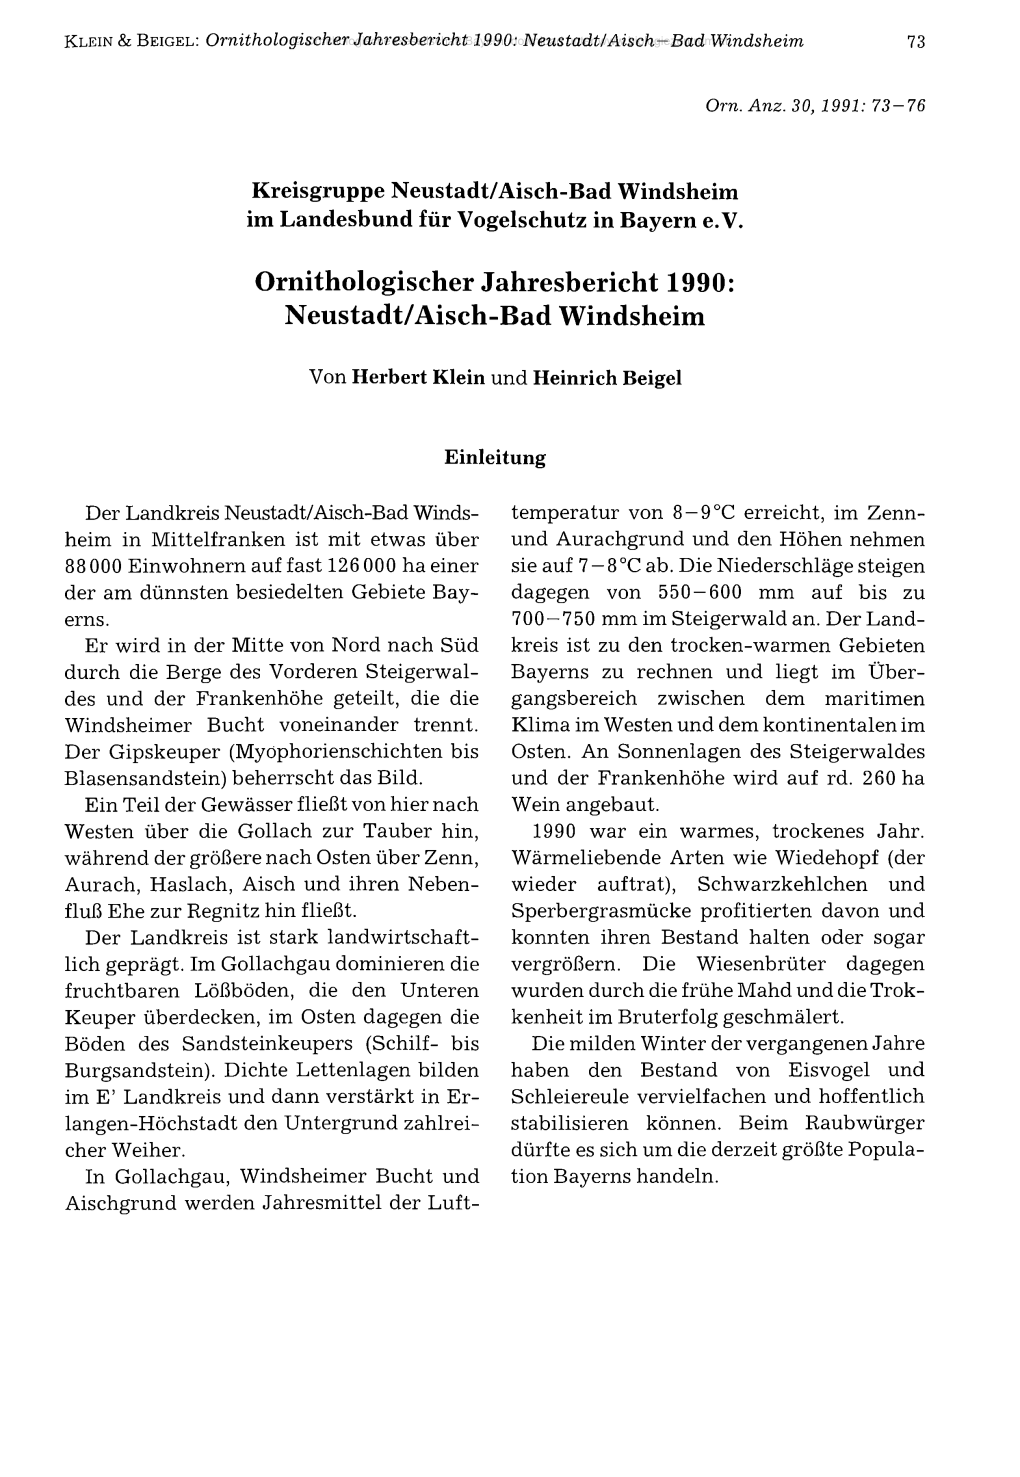 Neustadt/Aisch-Bad Windsheim Im Landesbund Für Vogelschutz in Bayern E.V